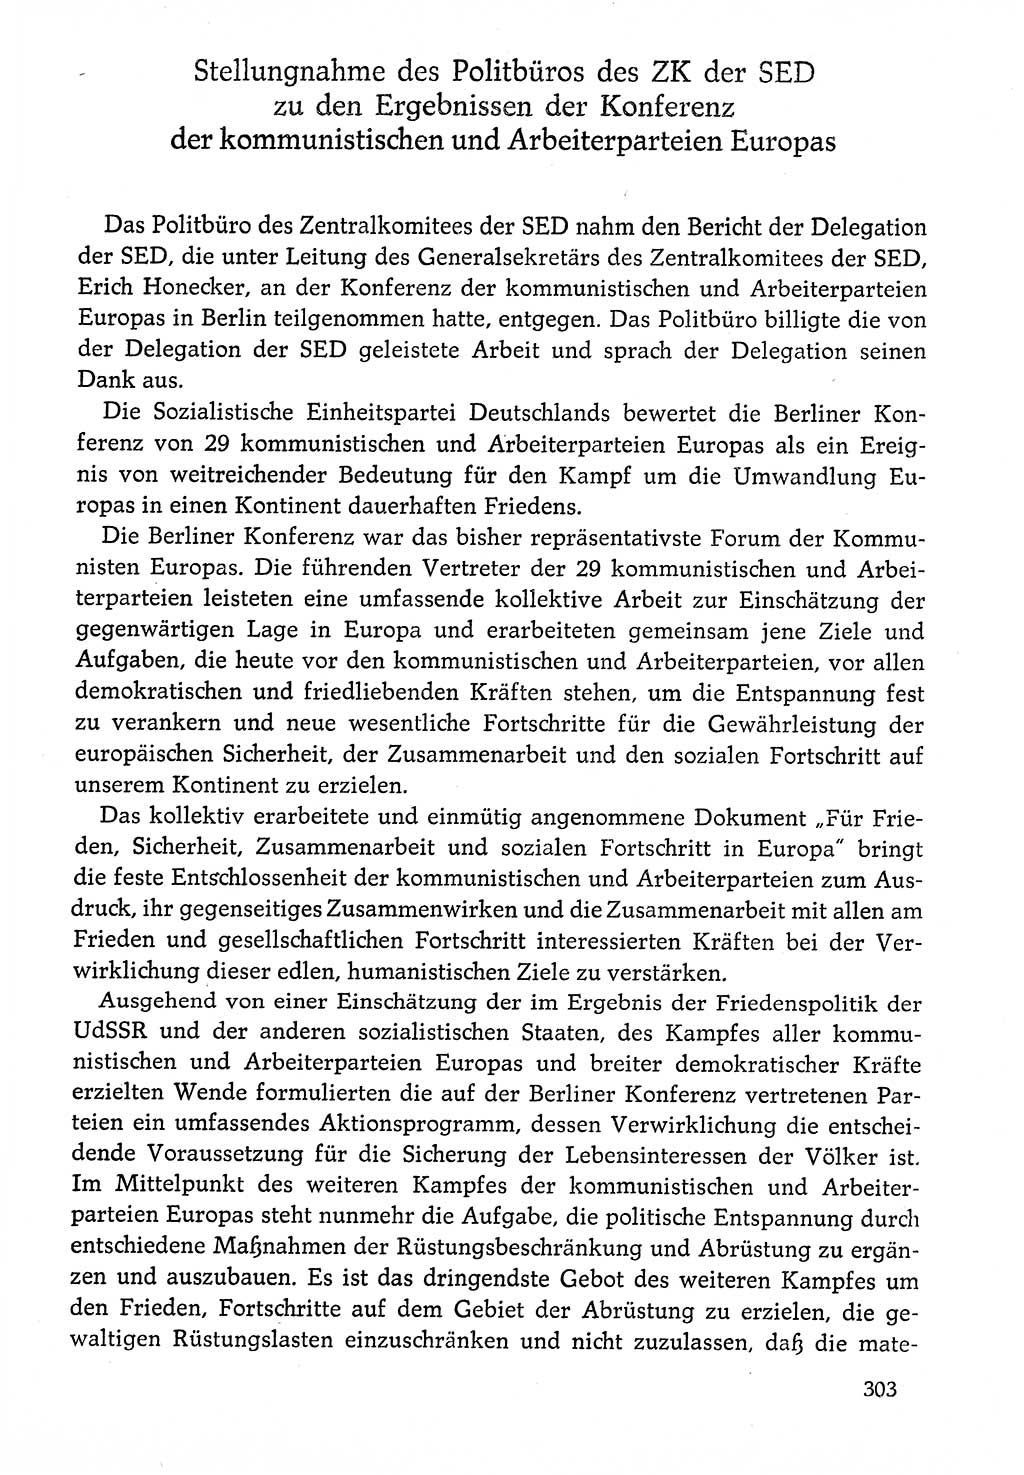 Dokumente der Sozialistischen Einheitspartei Deutschlands (SED) [Deutsche Demokratische Republik (DDR)] 1976-1977, Seite 303 (Dok. SED DDR 1976-1977, S. 303)